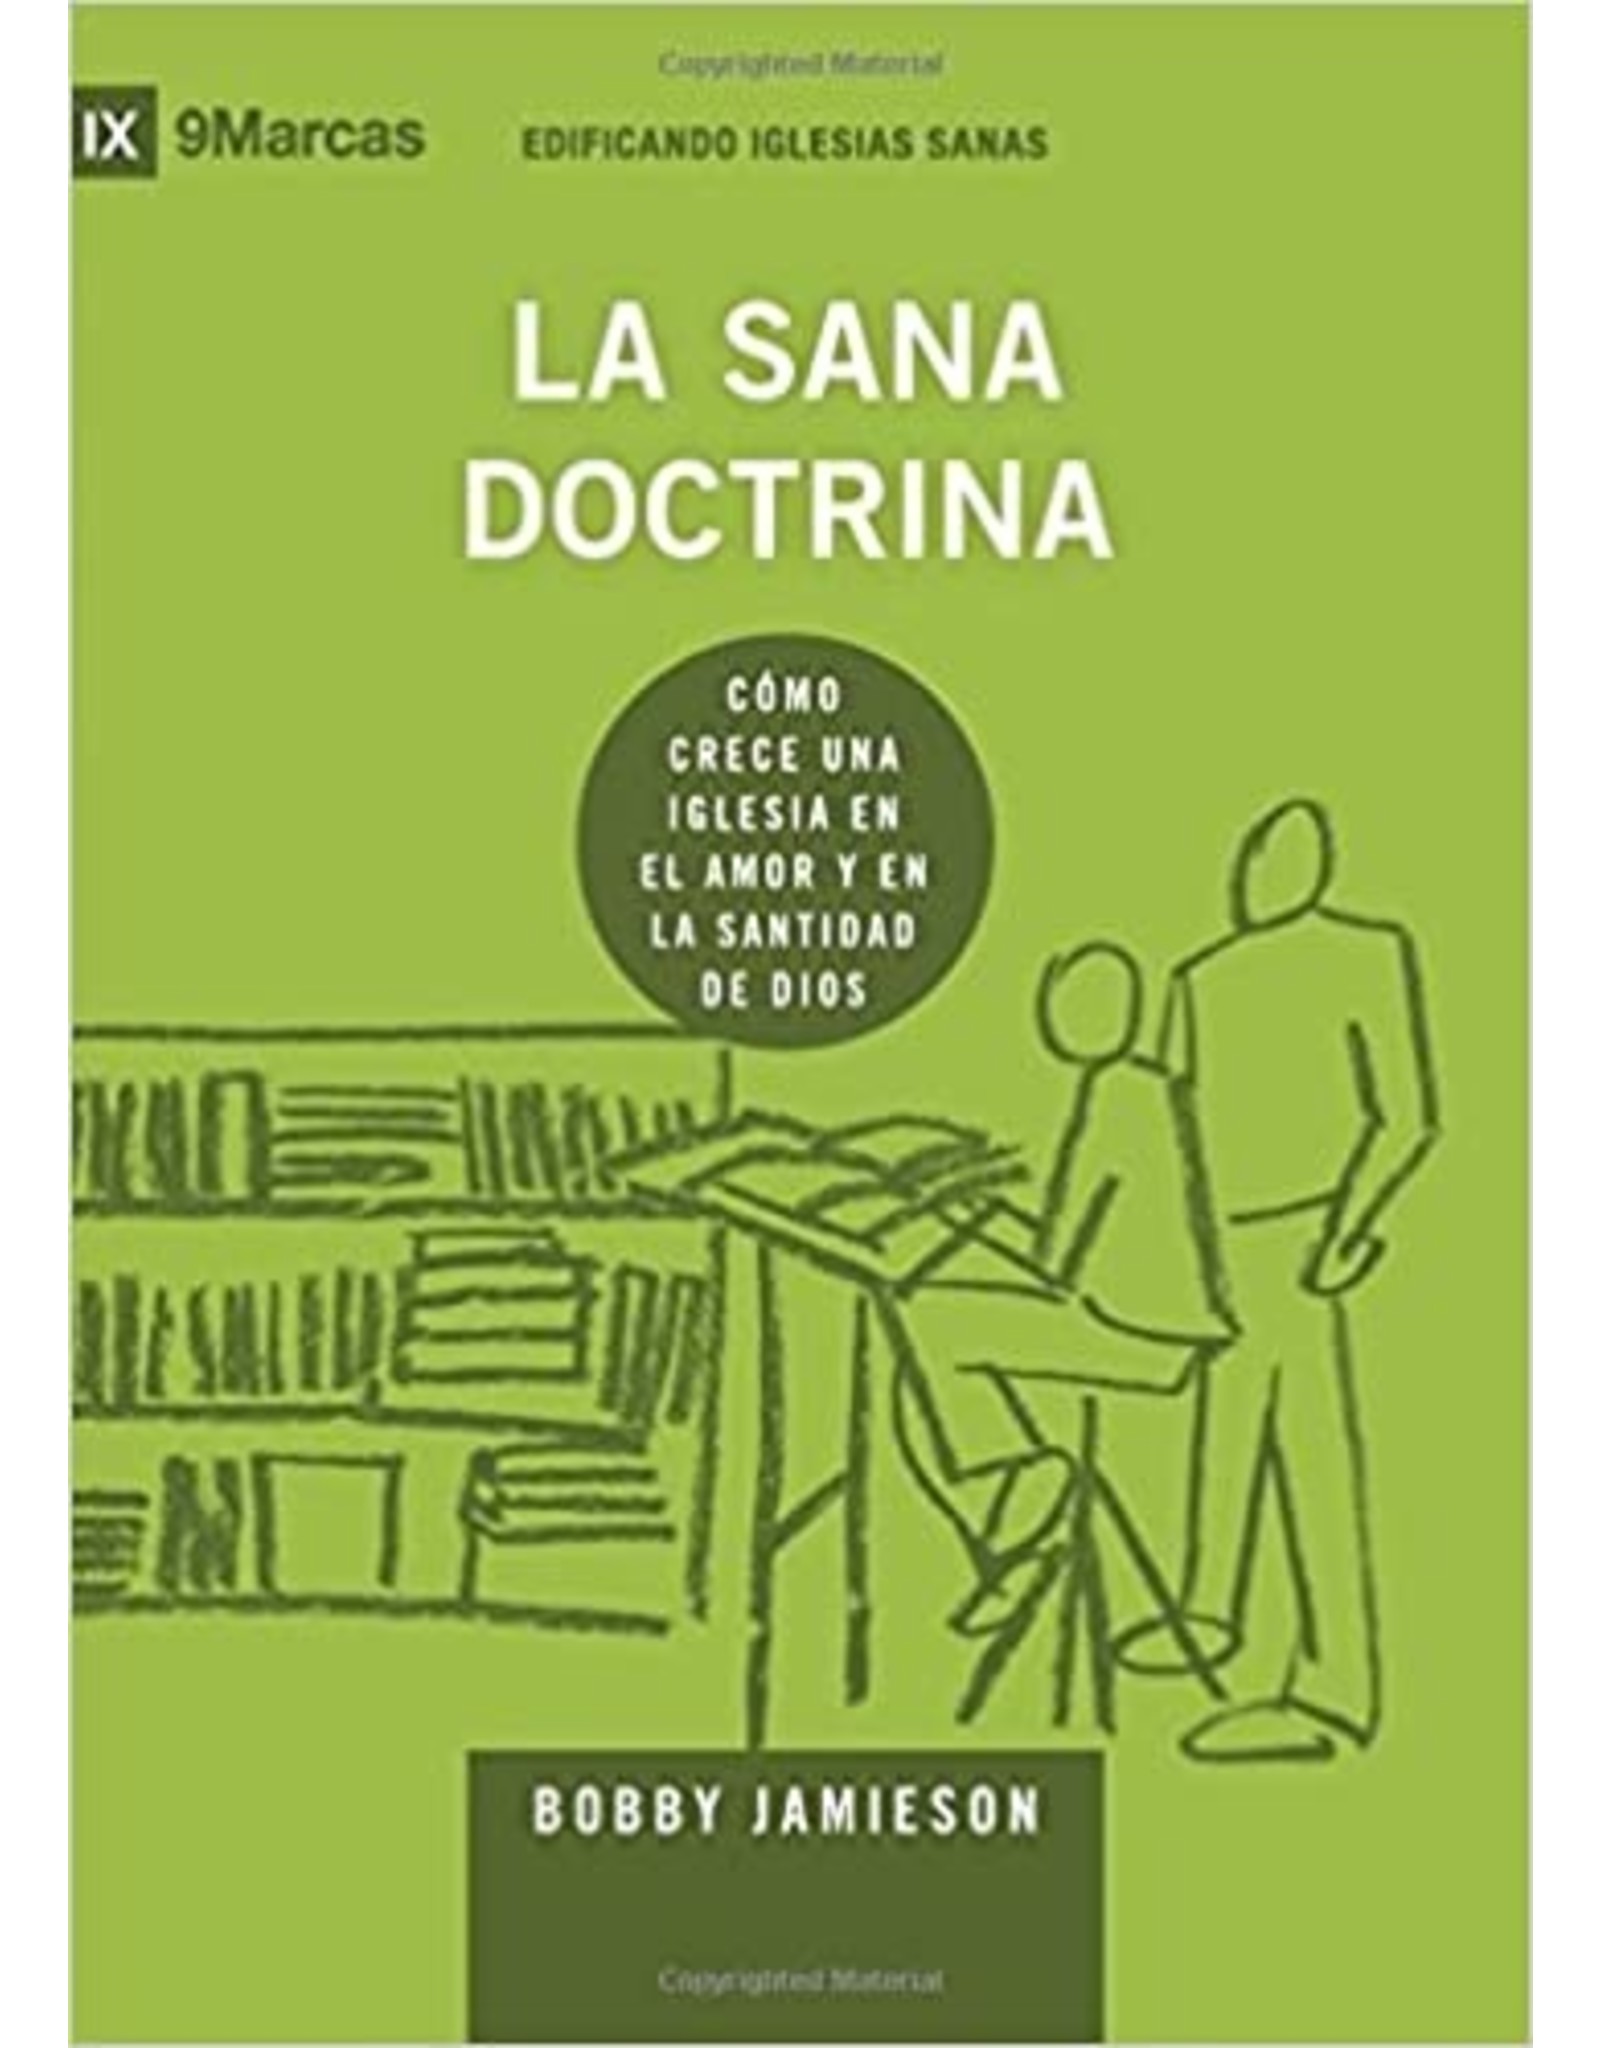 Poiema La Sana Doctrina (Sound Doctrine)